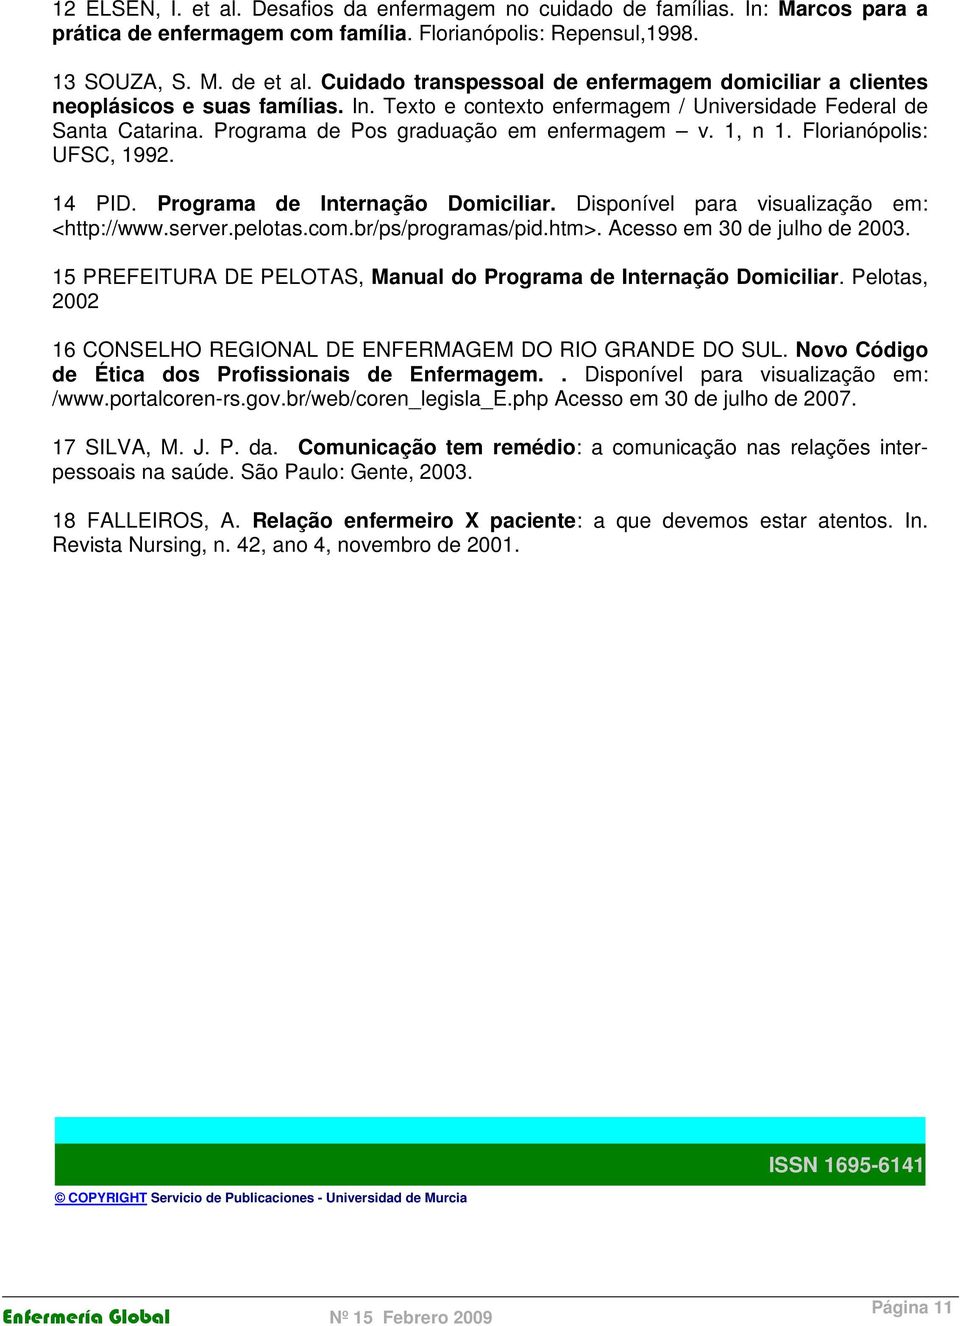 Programa de Pos graduação em enfermagem v. 1, n 1. Florianópolis: UFSC, 1992. 14 PID. Programa de Internação Domiciliar. Disponível para visualização em: <http://www.server.pelotas.com.